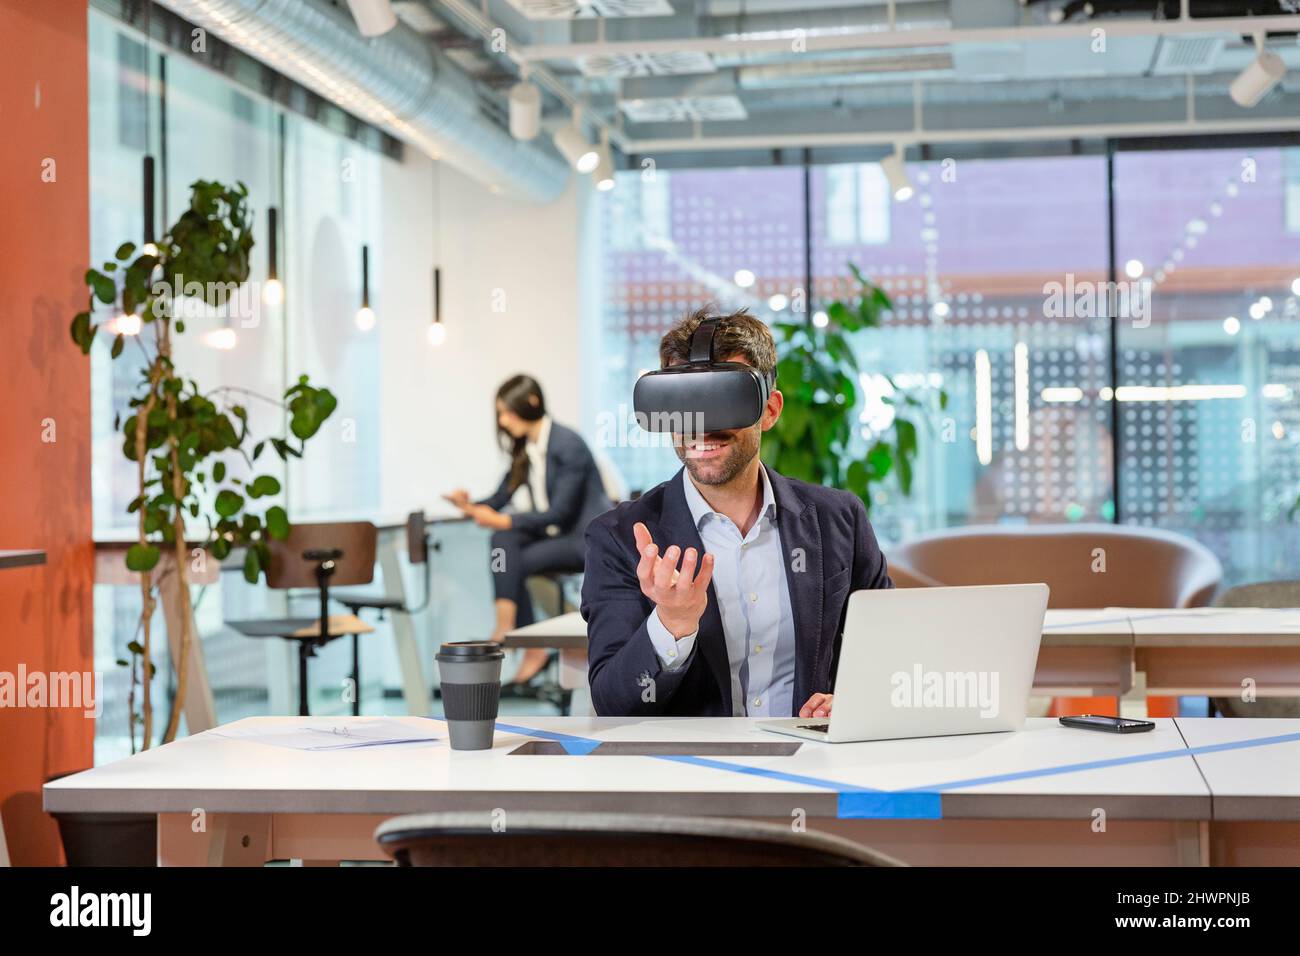 Employé avec VR googles faisant des gestes au bureau Banque D'Images